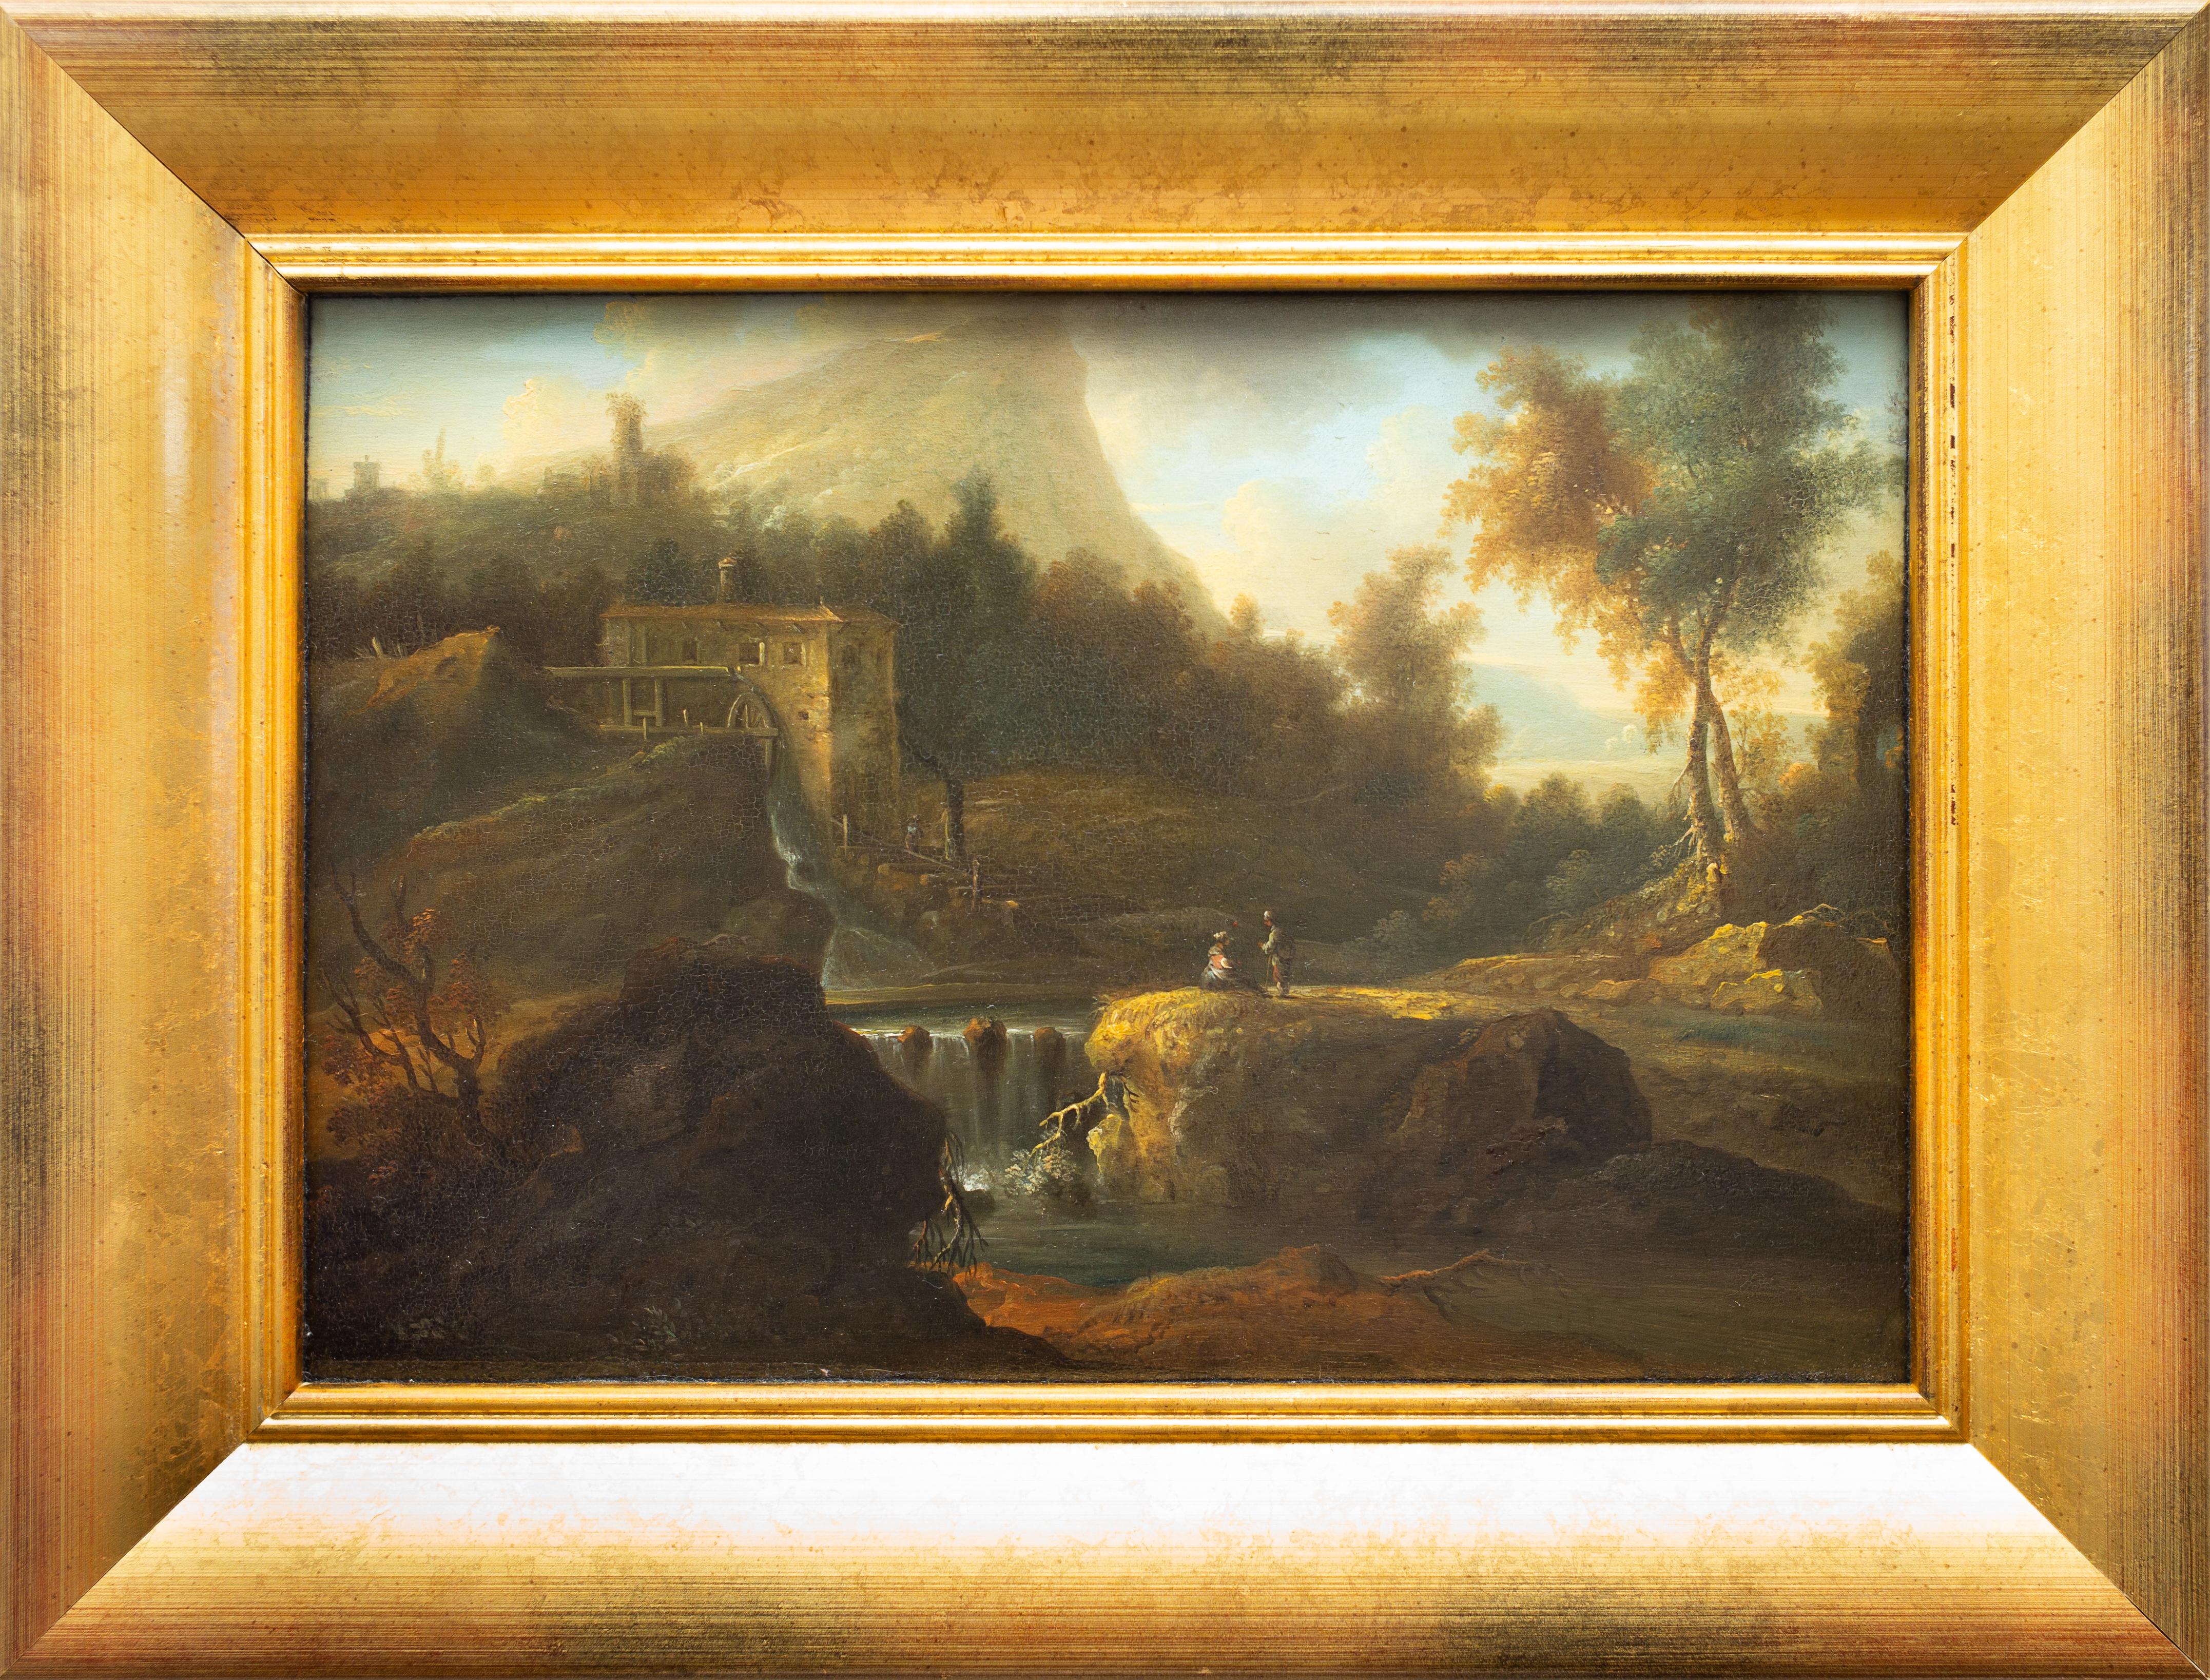 Italienische Landschaft mit Figuren an einem Wasserfall von Jan van Huysum, einem Anhänger – Painting von Jan Van Huysum